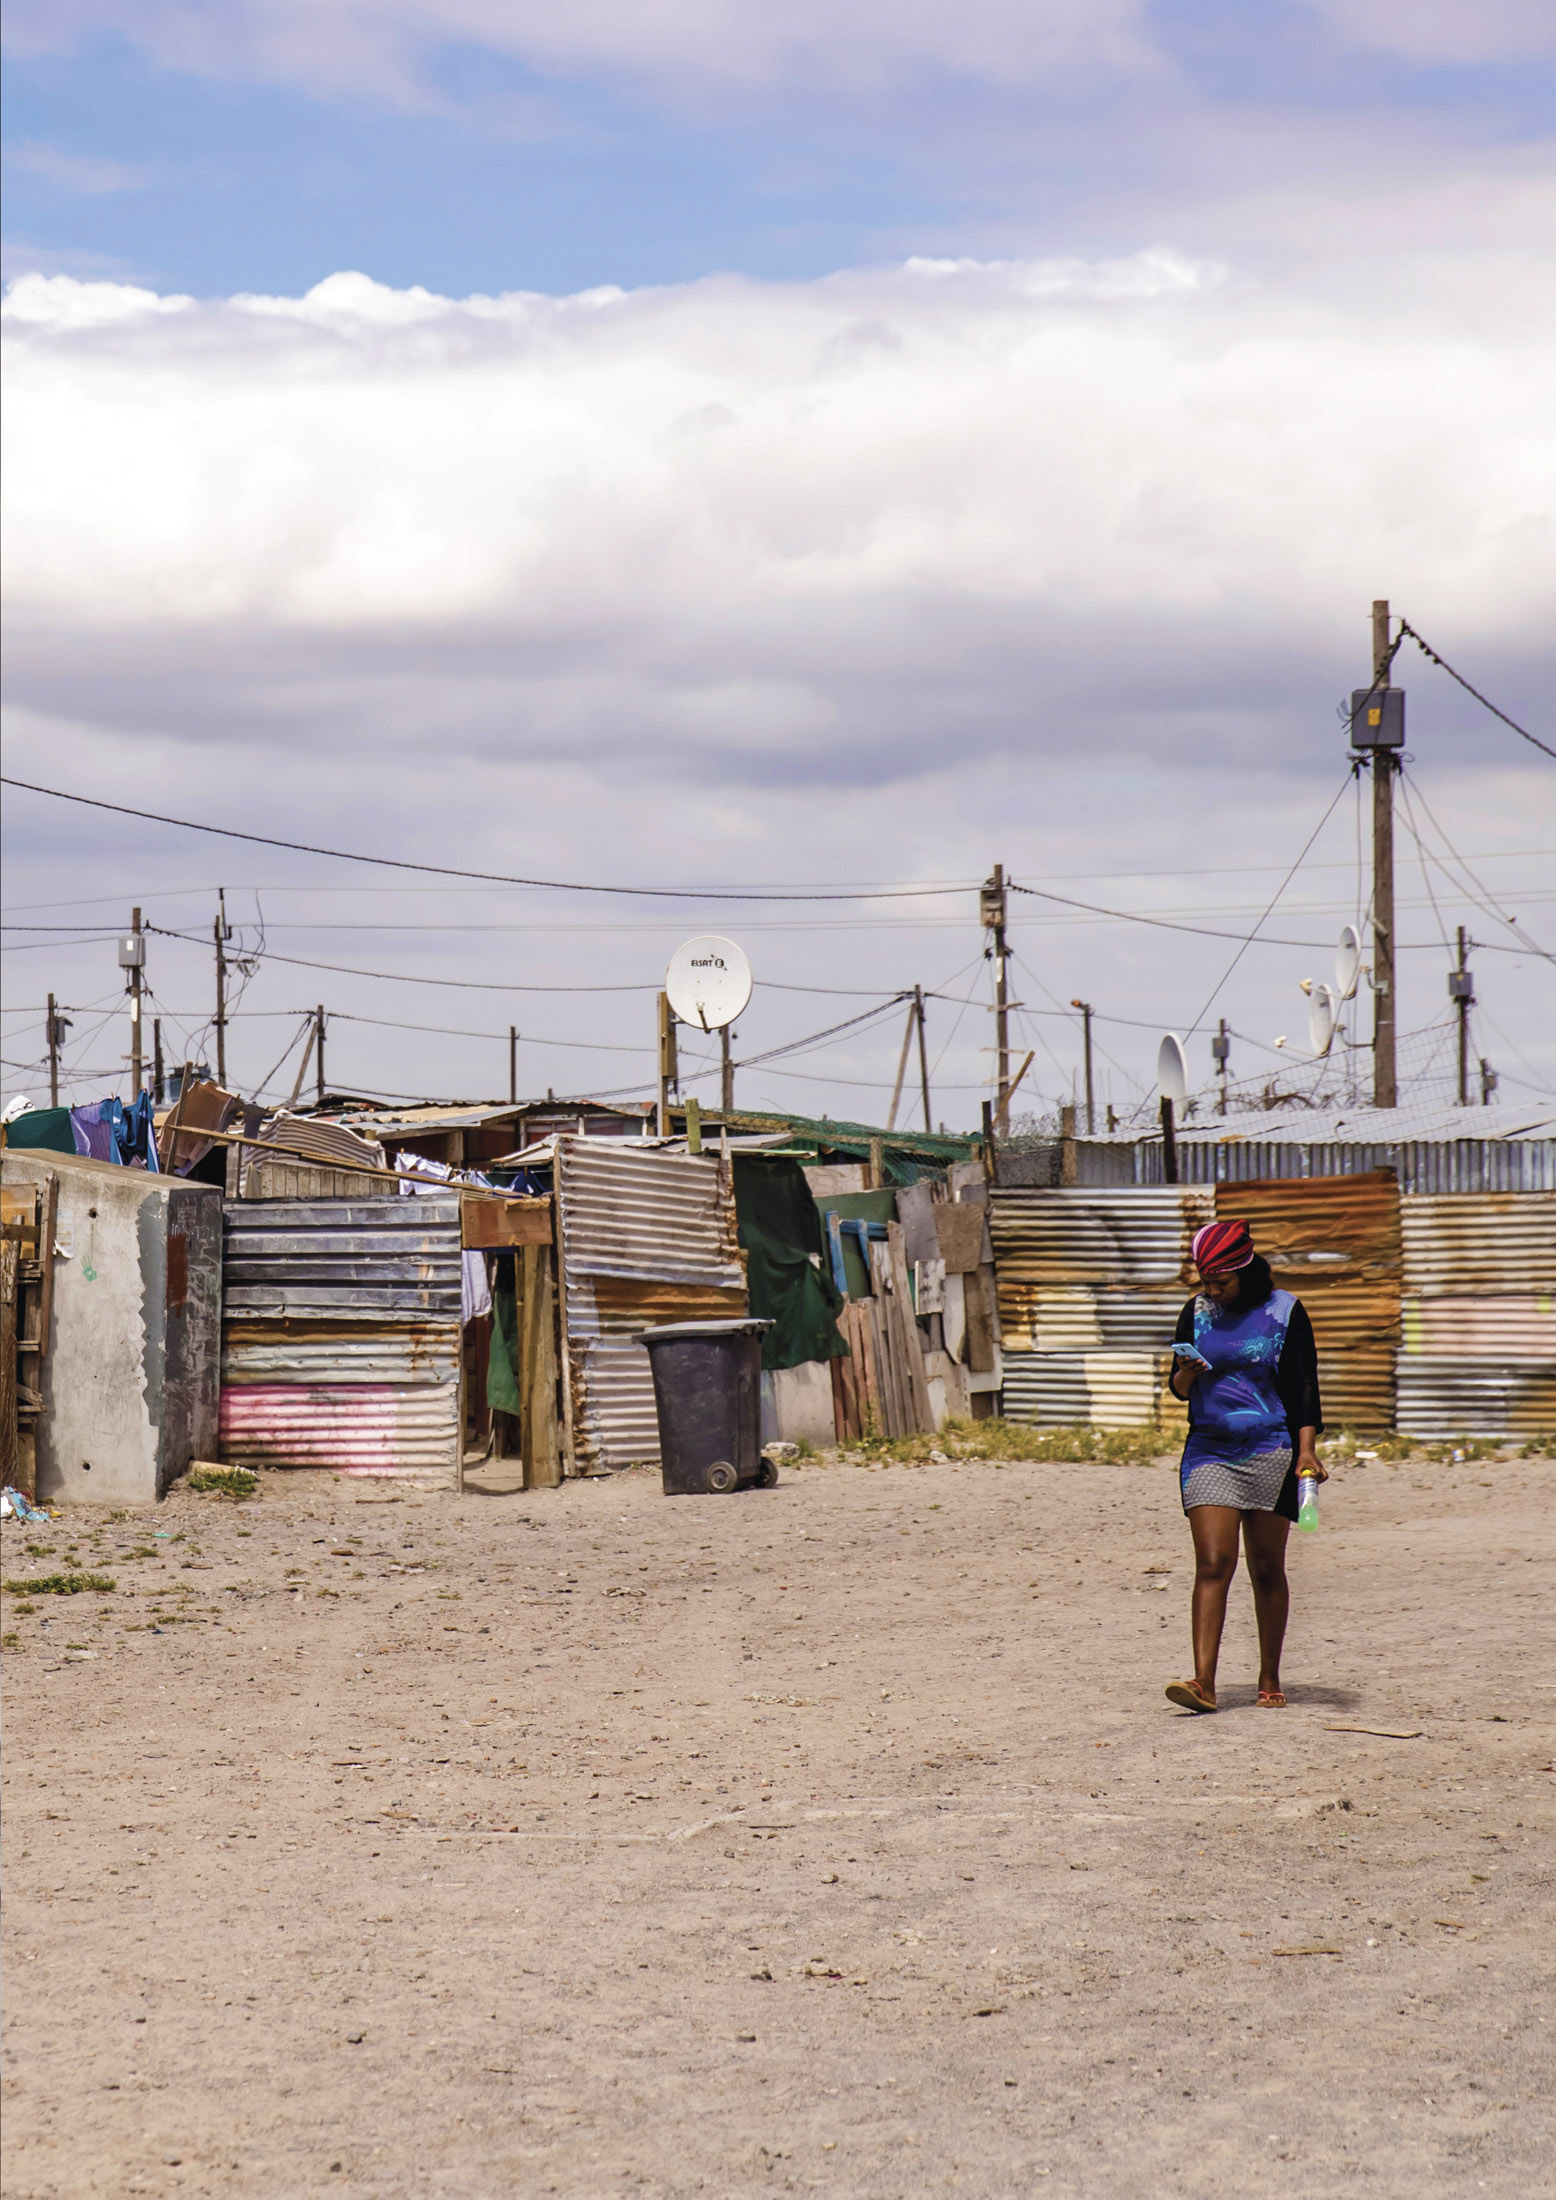 Eine Frau geht von der Kamera weg eine staubige Straße entlang, die in einer dünn besiedelten Gegend unter einem bewölkten Himmel von provisorischen Behausungen aus Wellblech gesäumt ist. Satellitenschüsseln sind zu sehen. © Fotografie Tomas Rodriguez